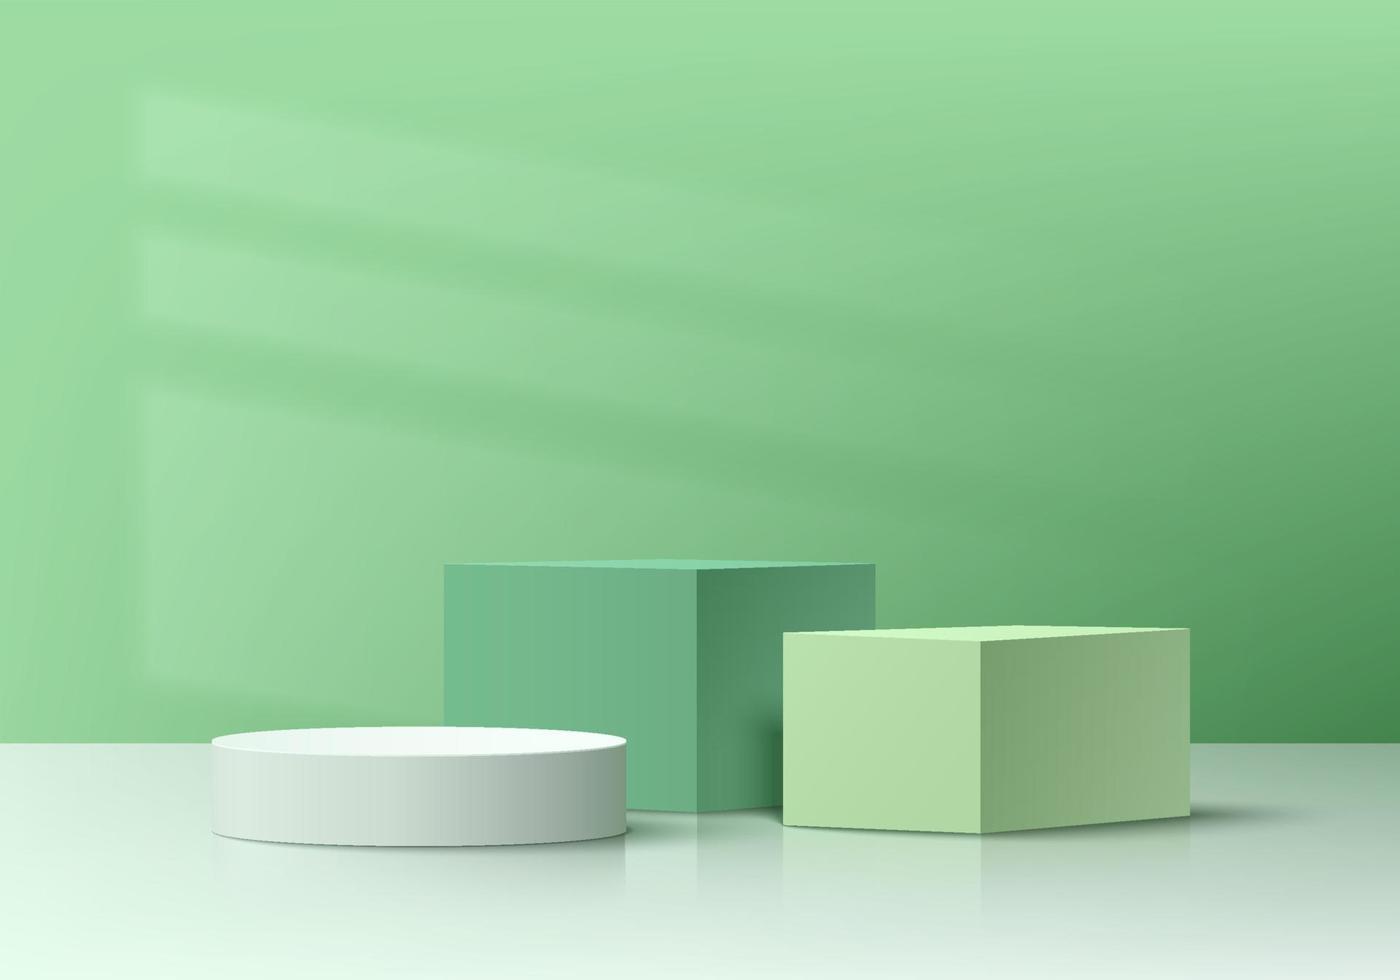 realistisk vit, grön 3d kub och cylinder piedestal podium set med fönster skugga bakgrund. minimal väggscen för produkter scen showcase, promotion display. vektor geometriska former gruppdesign.